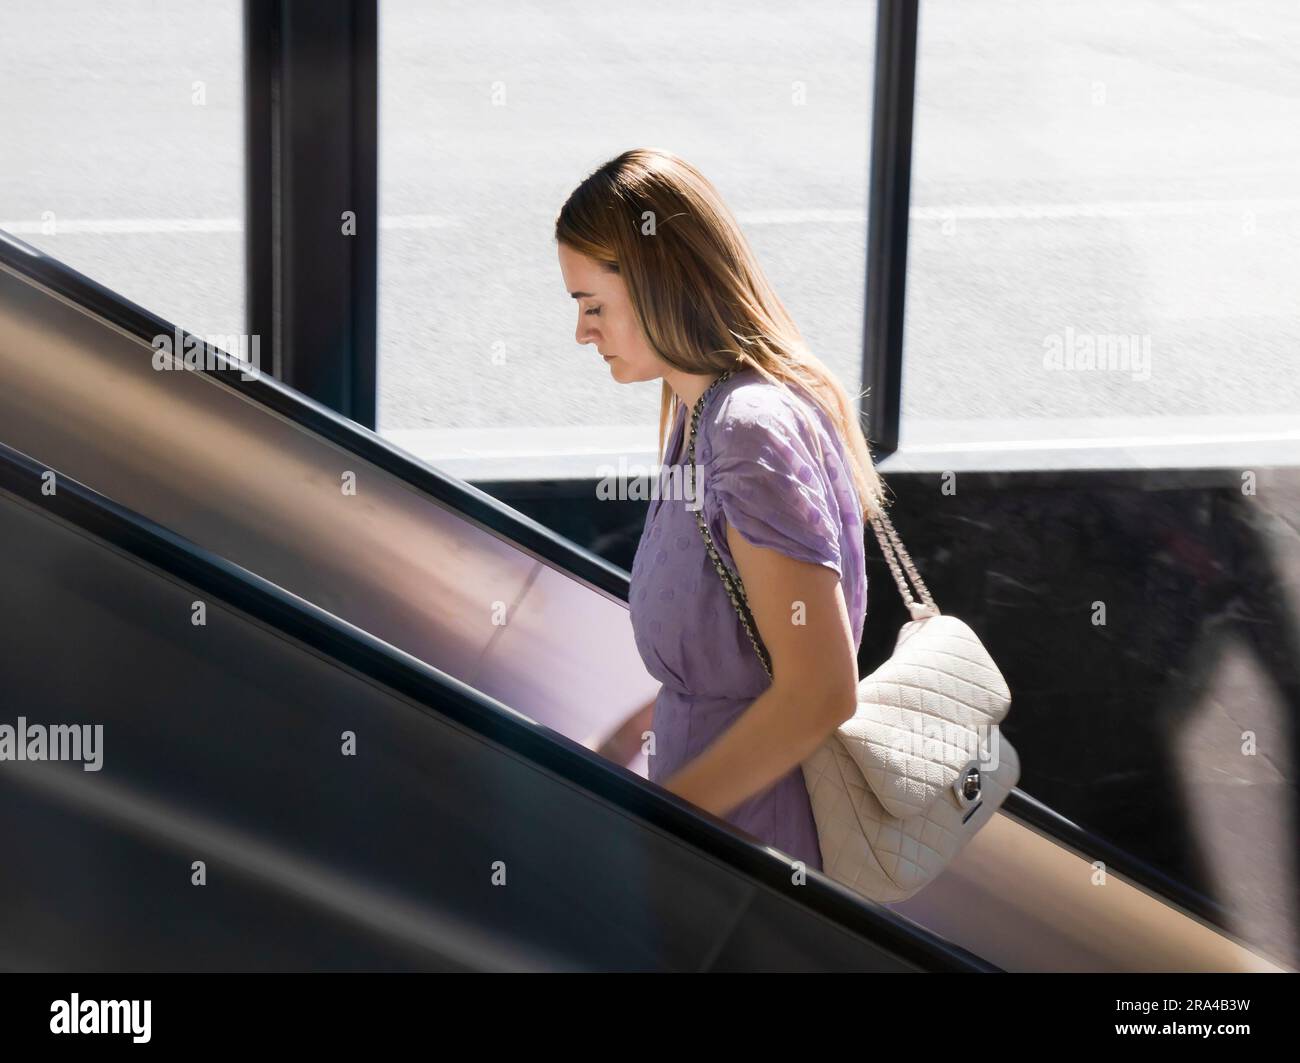 Belgrado, Serbia - 15 giugno 2022: Giovane donna elegante in abito viola che sale sulla scala mobile della metropolitana, in una giornata di sole Foto Stock